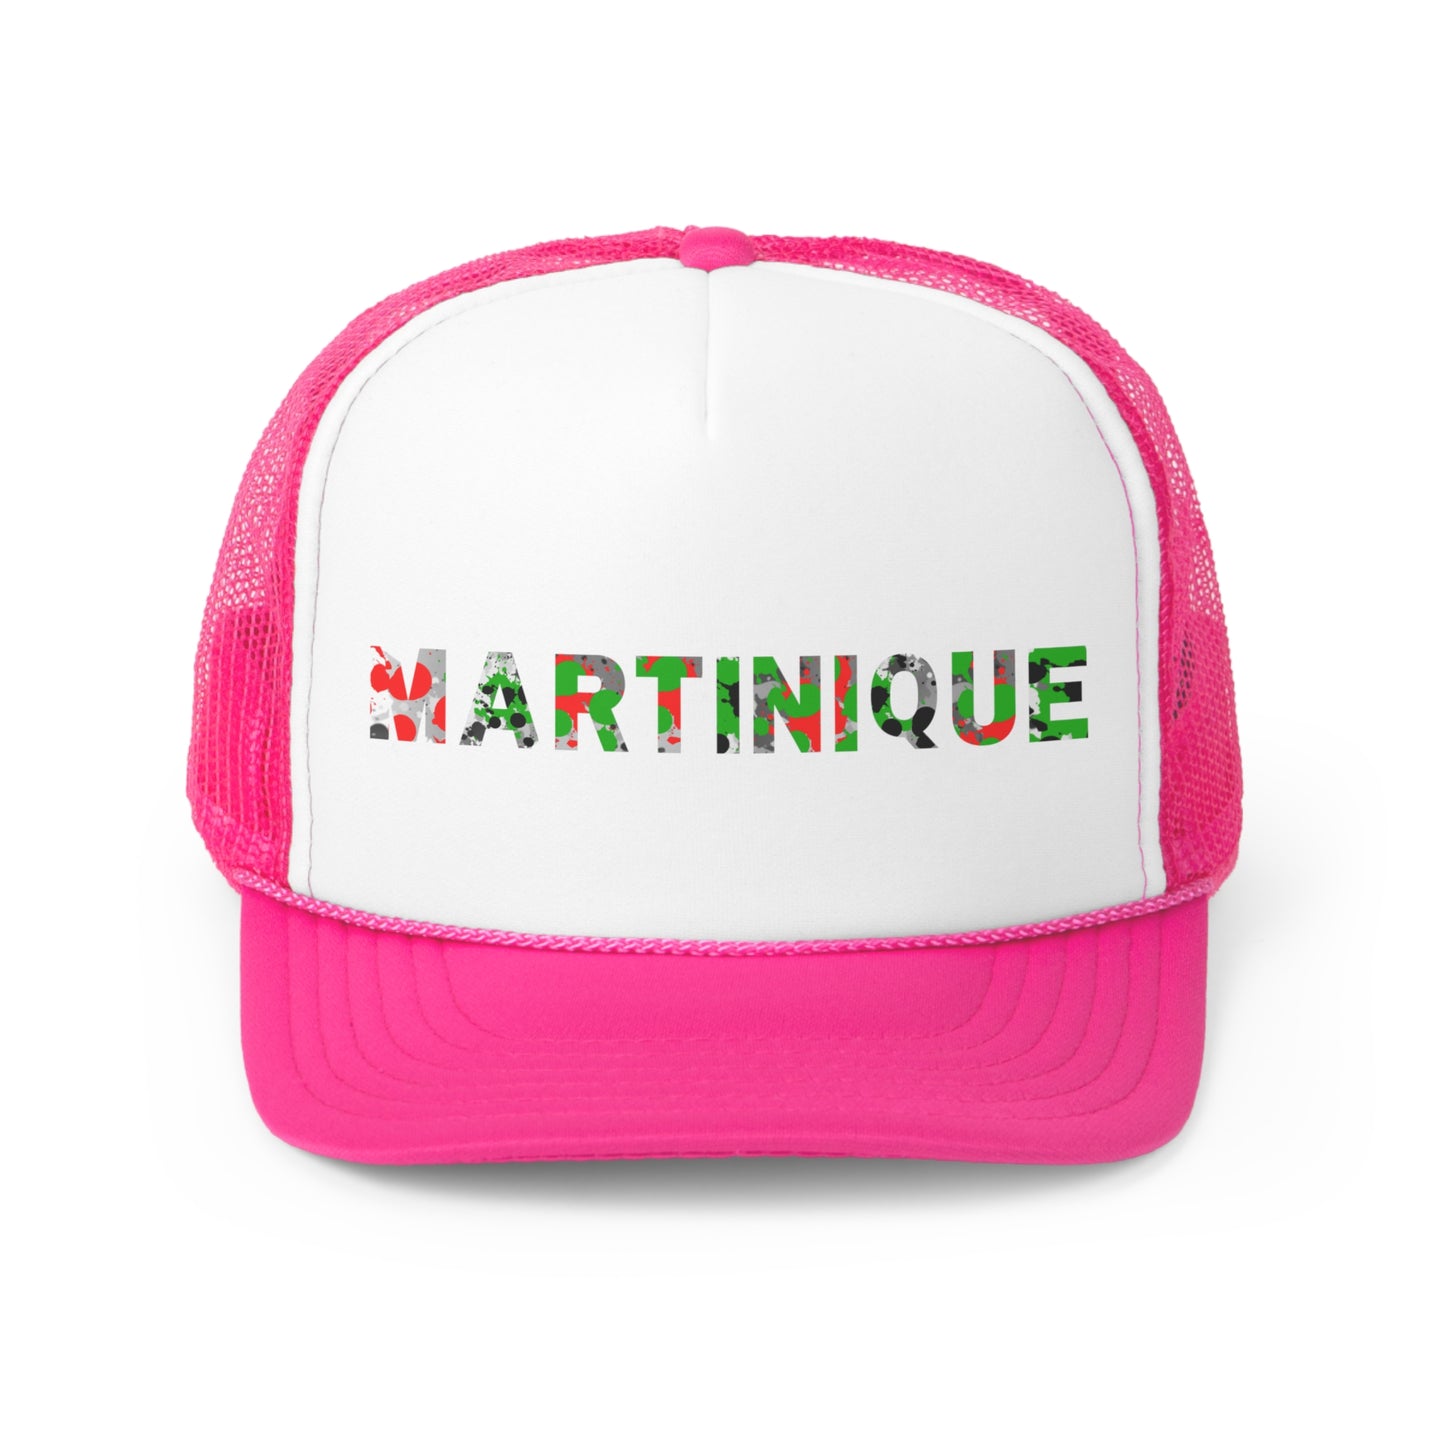 Martinique Trucker Caps